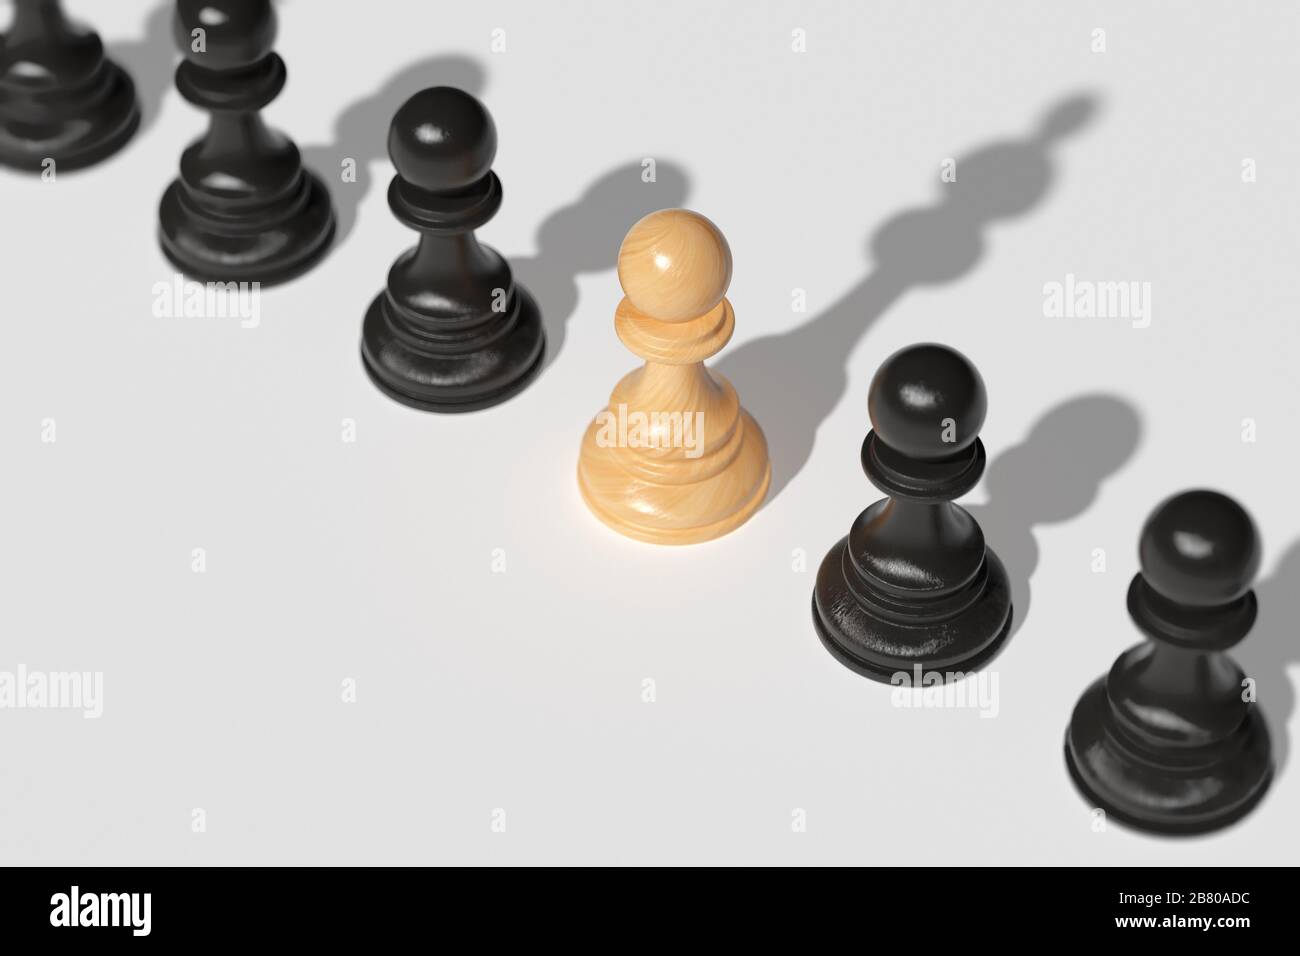 Una pedina di scacchi, insieme ad altre pedine, getta un'ombra sulla regina. Il concetto di leadership, il desiderio di forza e vittoria. Foto Stock